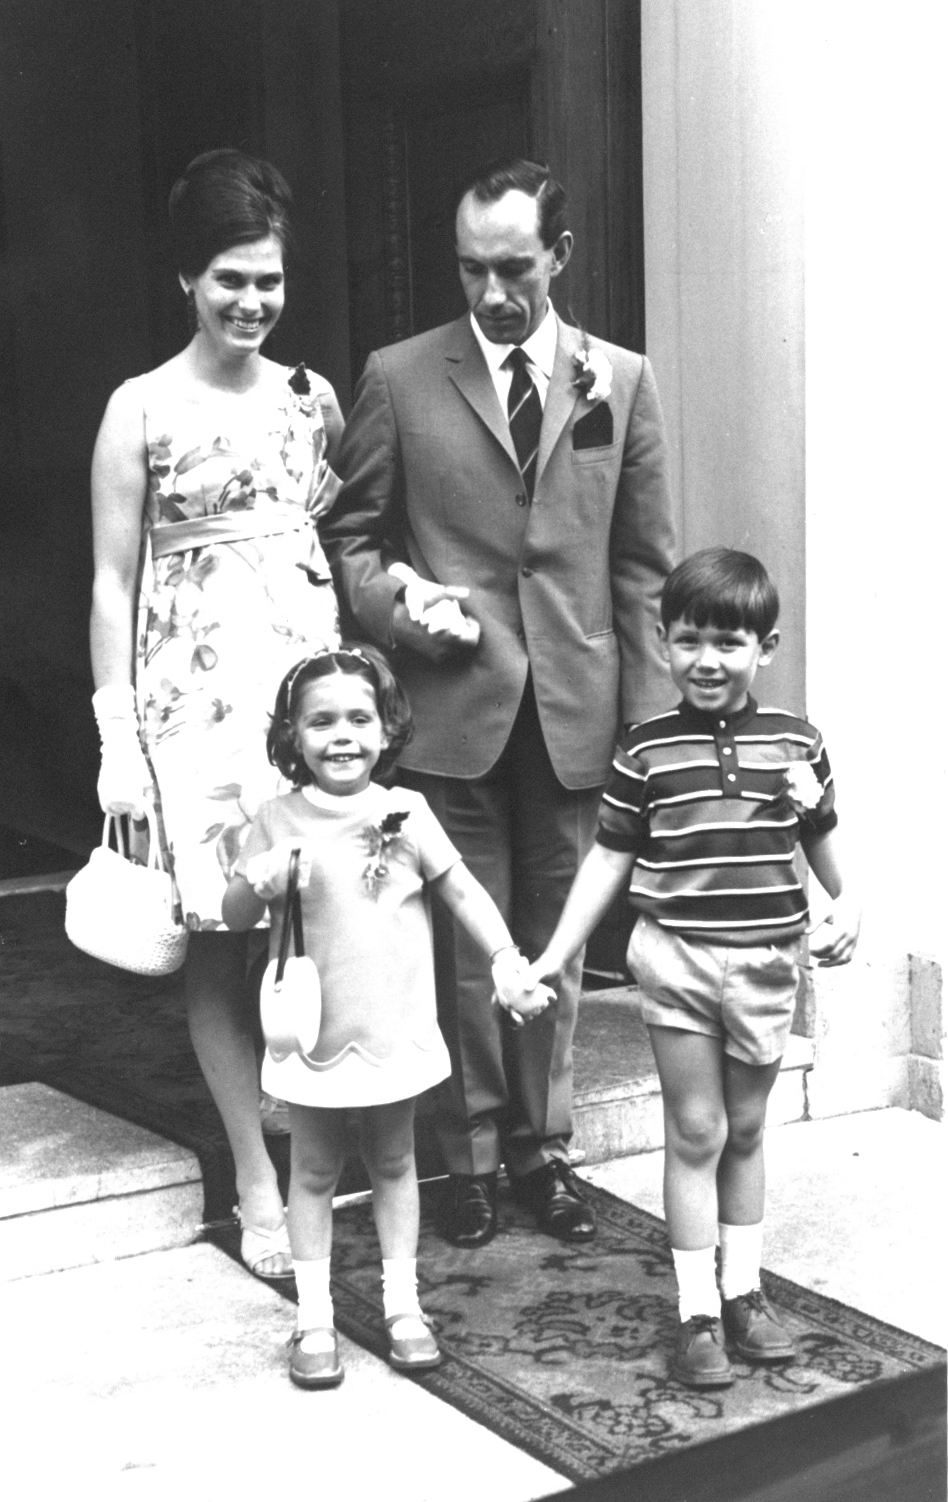 Foto genomen tijdens het huwelijk van mijn oom en tante Gerrit en Tonnie Bos-Kuijper in 1969.